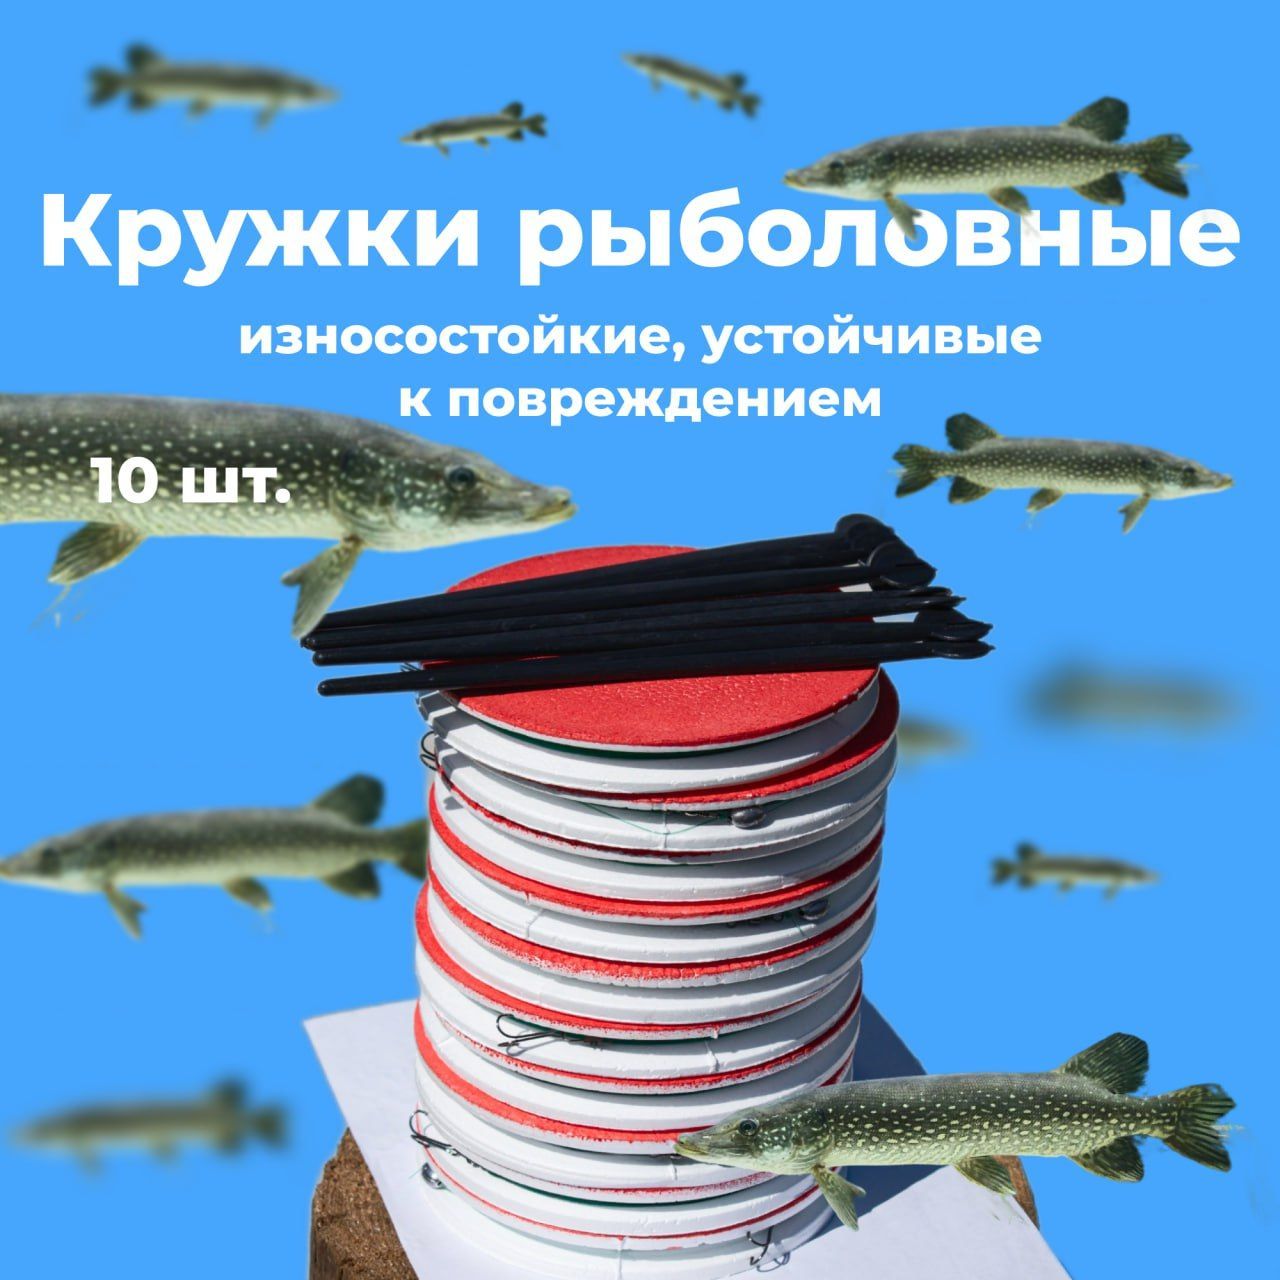 Купить жерлицы и кружки для зимней рыбалки оптом в Украине: Киев, Харьков, Днепр, Одесса